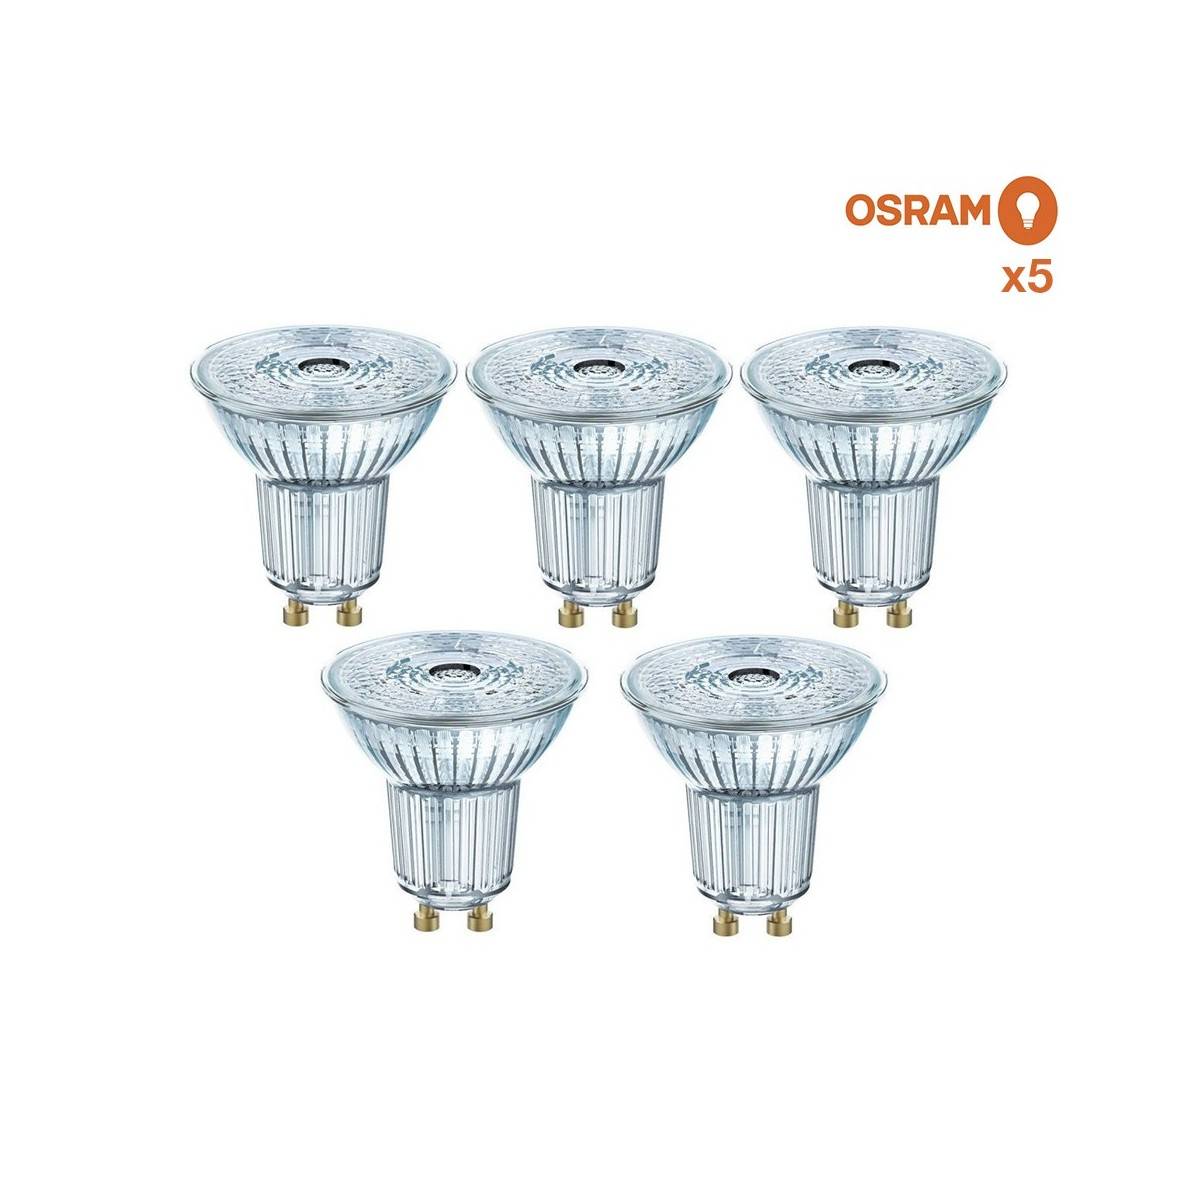 Pack poupança de 5 lâmpadas LED OSRAM GU10 4.3W 36°